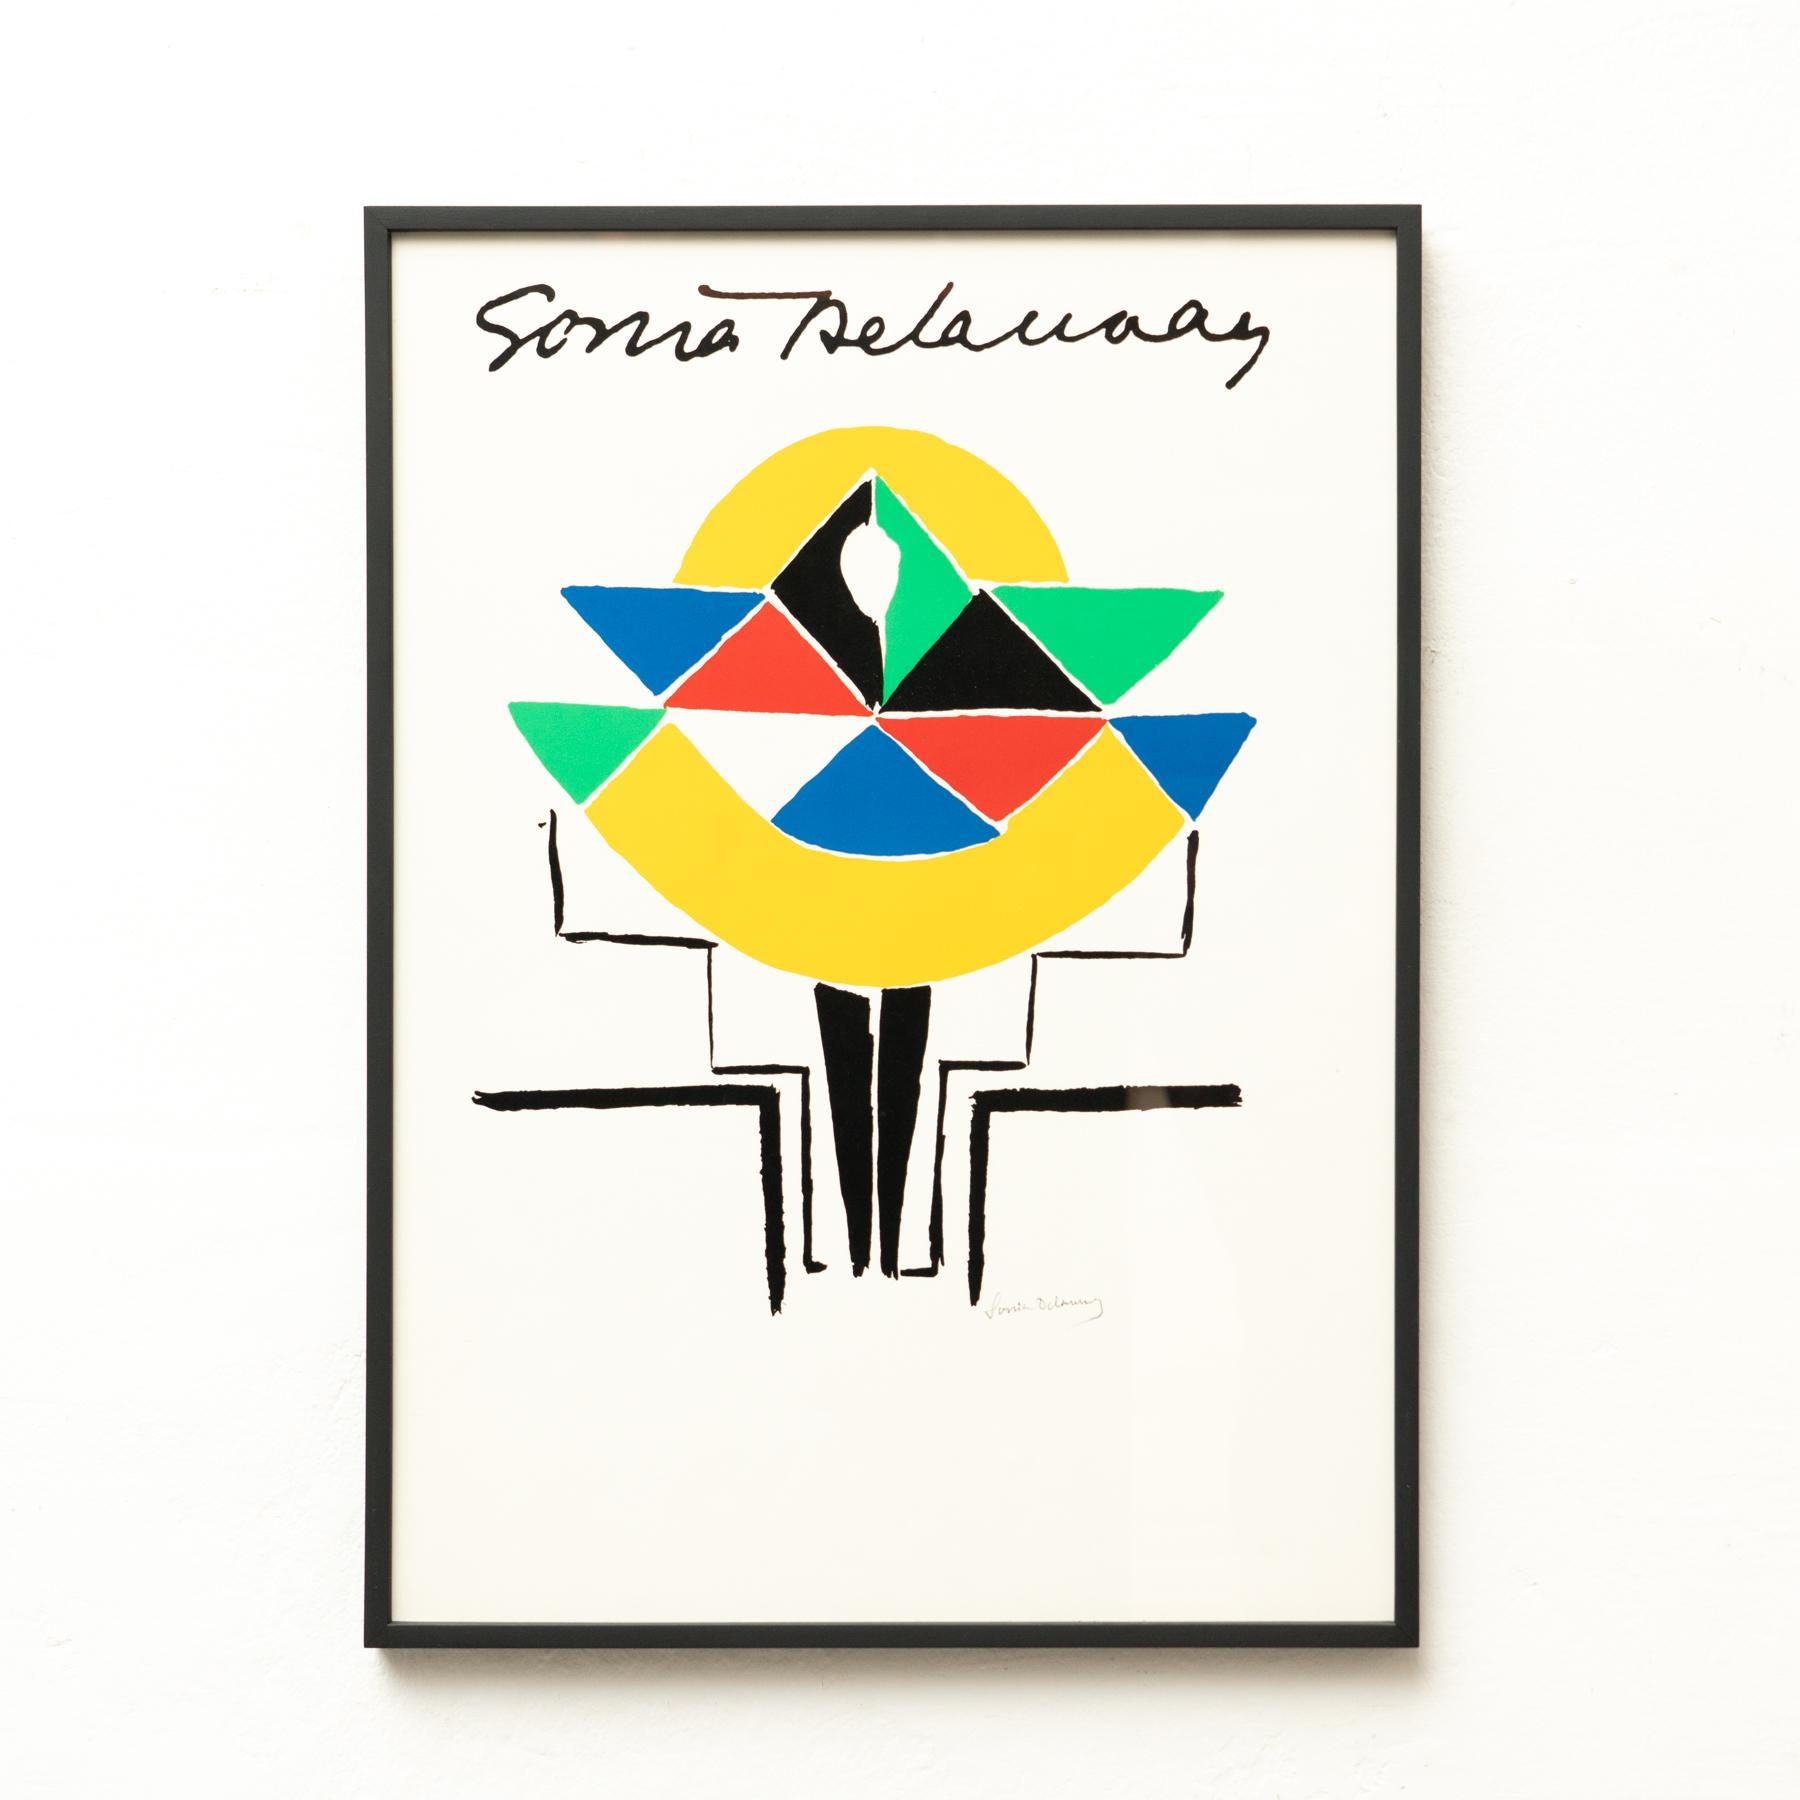 Lithographie de Sonia Delaunay.
Provenance : France

Signé sur la plaque.

Sonia Delaunay (1885-1979) est une artiste française d'origine ukrainienne qui a passé la majeure partie de sa vie professionnelle à Paris. Avec son mari Robert Delaunay